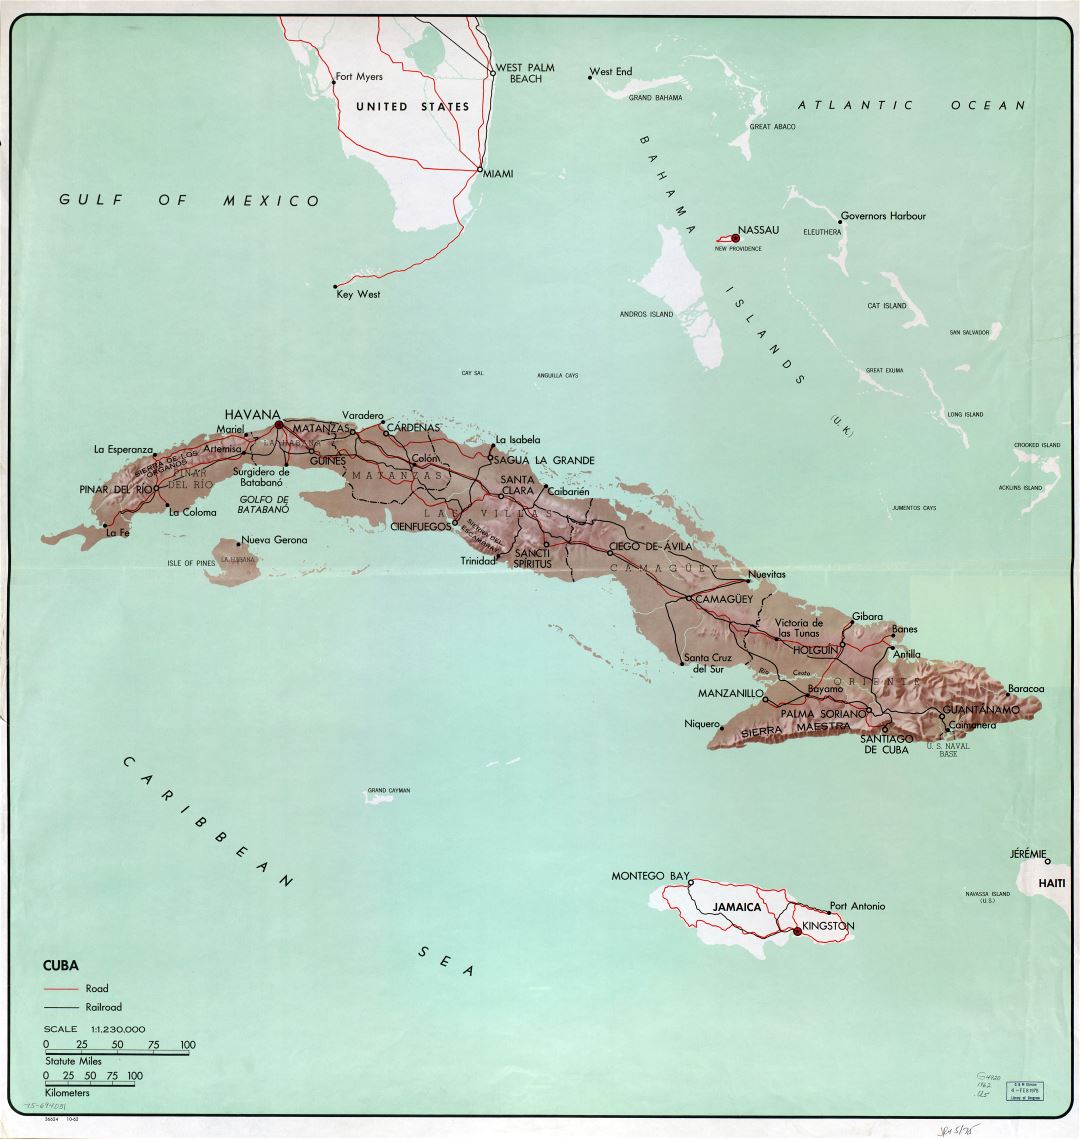 Крупномасштабная подробная политическая и административная карта Кубы с рельефом, дорогами, железными дорогами и крупными городами - 1962